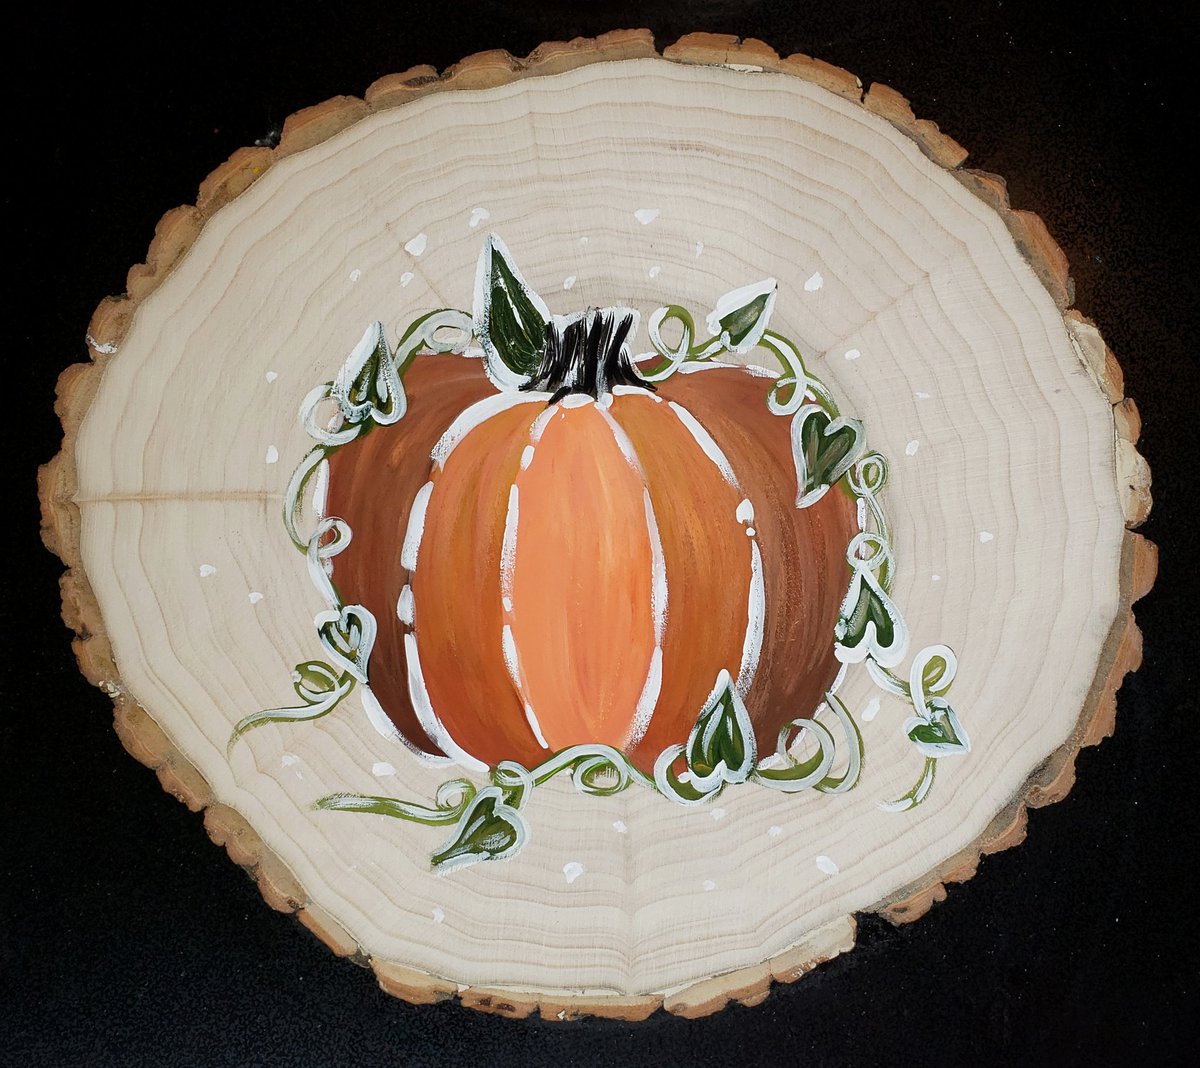 A cute pumpkin on a wood slice. 🎃
#fall #autumnvibes🍁 #autumn #gouchepainting #gouache #gourds #art #woodsliceart #pumpkin #pumpkinart #painting #woodslicepainting #fallart #autumnart #artontwitter